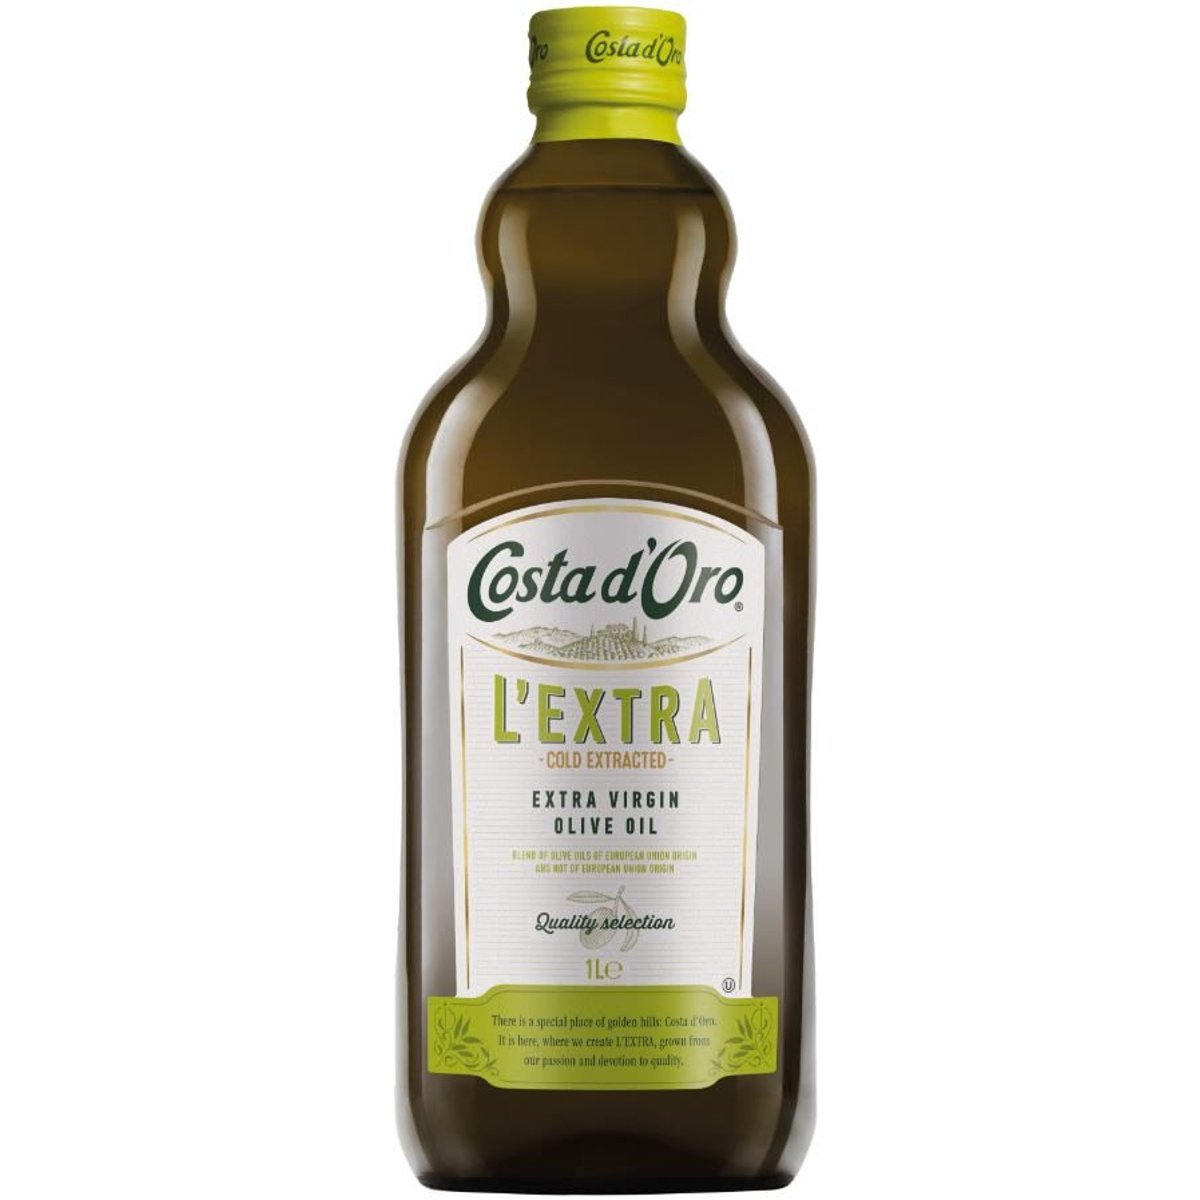 Costa d´Oro Extra panenský olivový olej